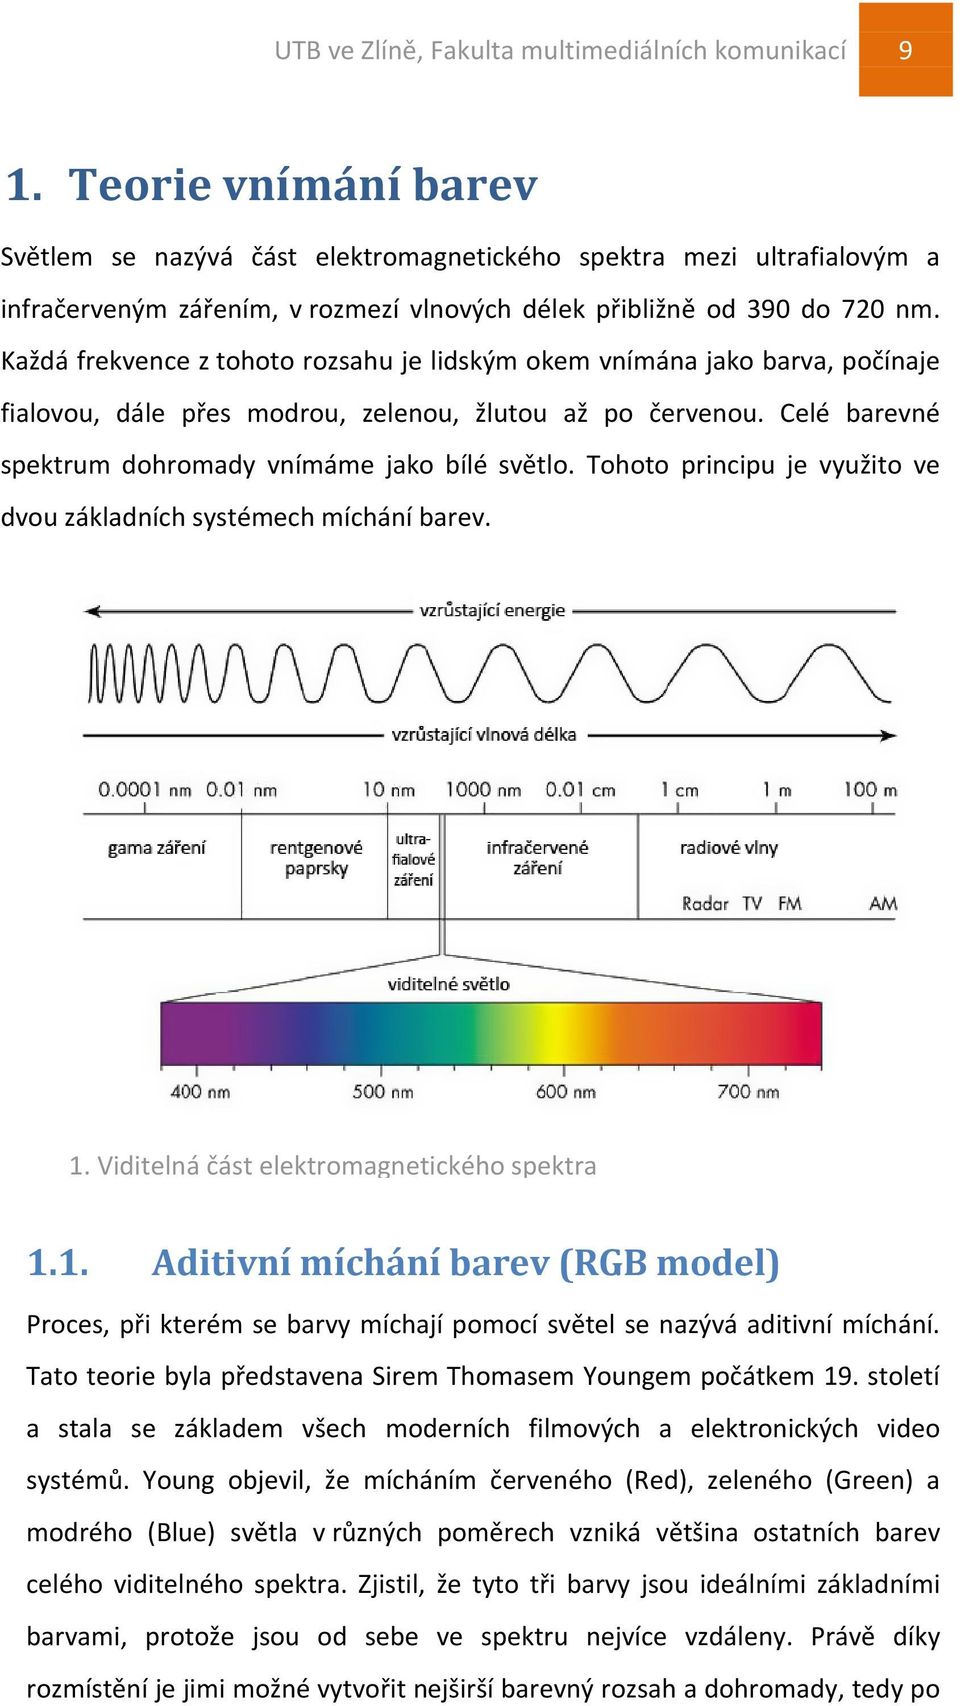 Každá frekvence z tohoto rozsahu je lidským okem vnímána jako barva, počínaje fialovou, dále přes modrou, zelenou, žlutou až po červenou. Celé barevné spektrum dohromady vnímáme jako bílé světlo.